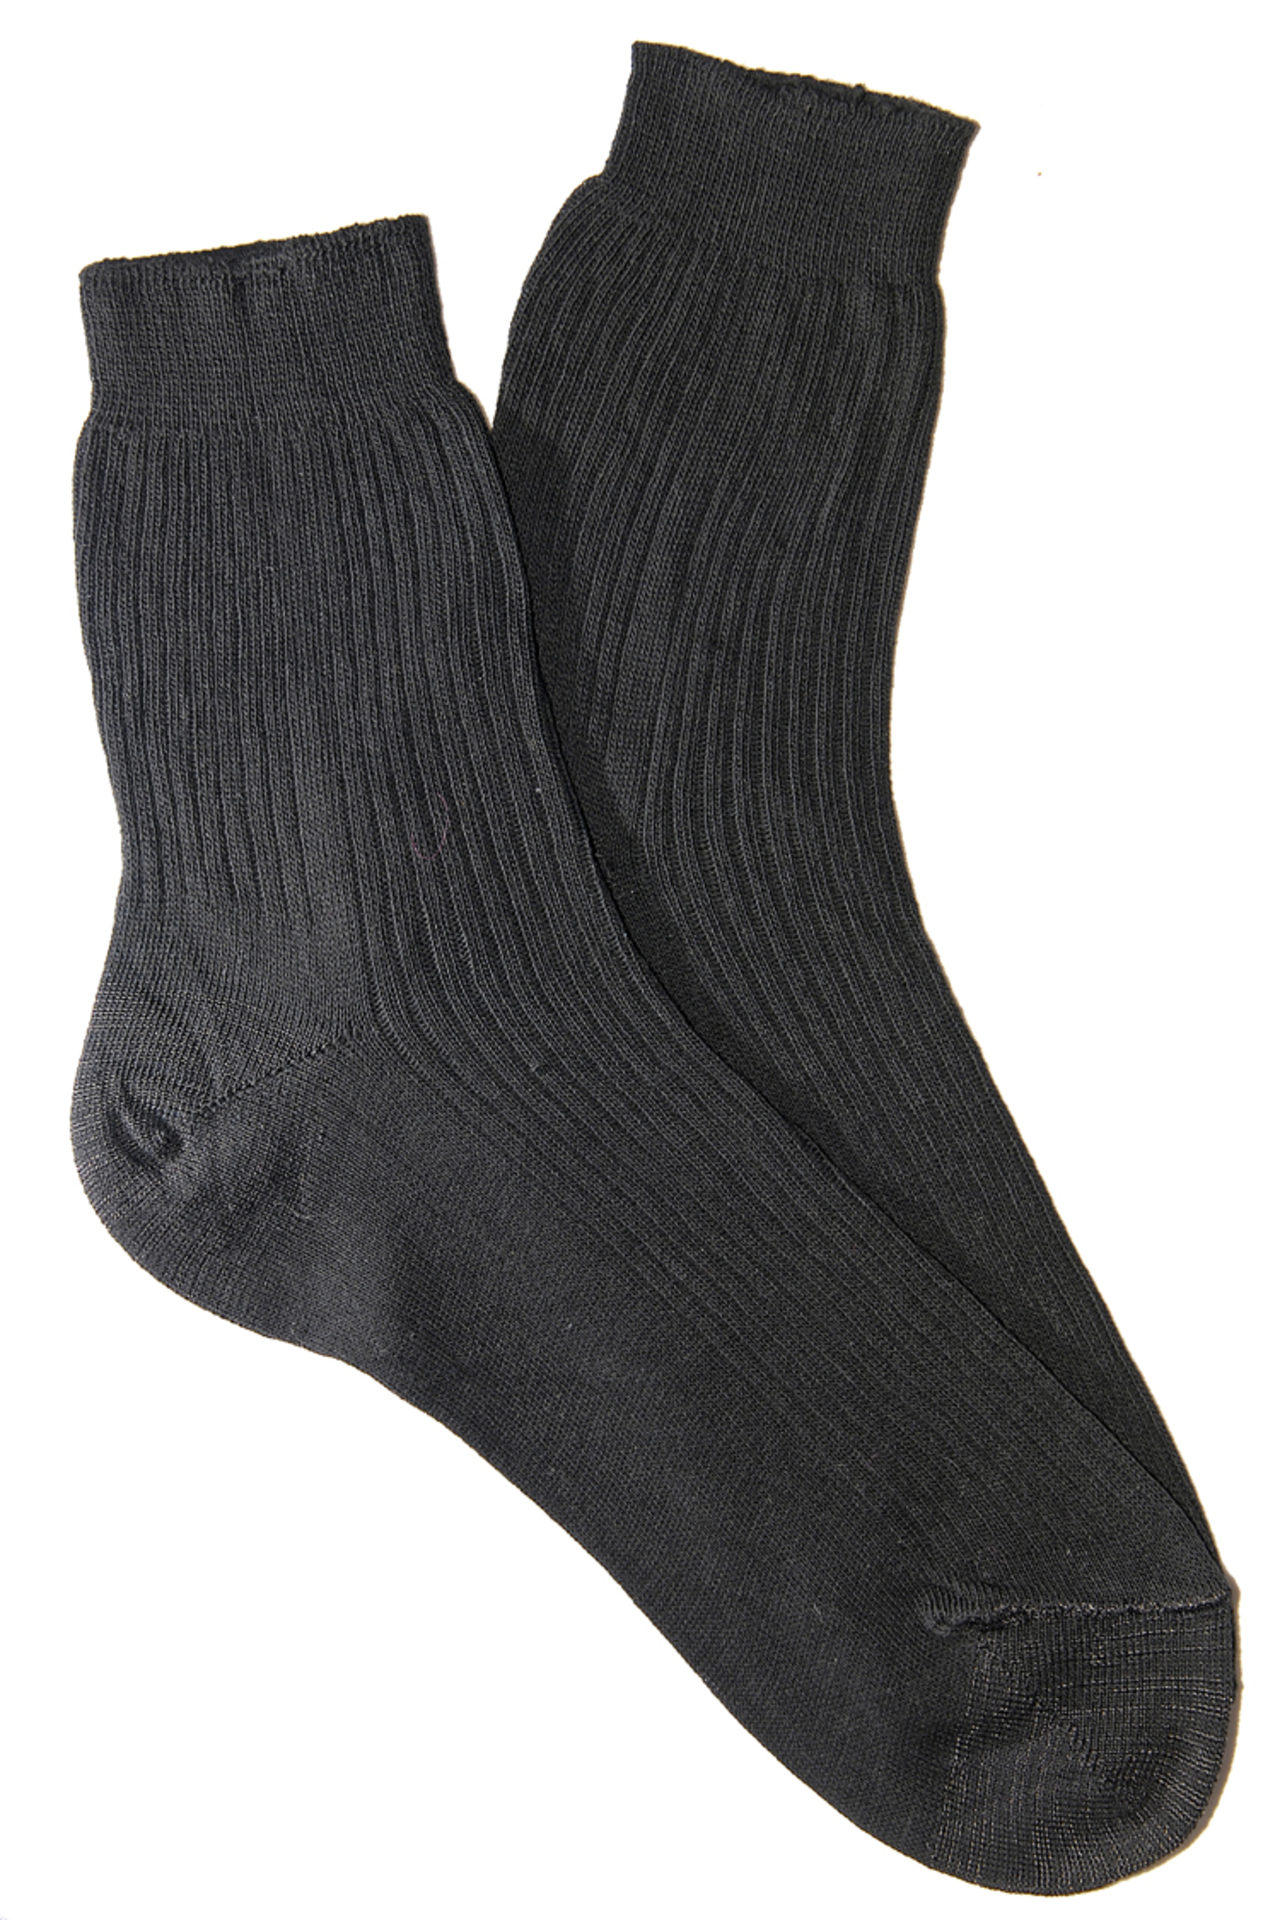 Купить хлопковые носки. Носки уставные БТК 100% хлопок. Носки мужские адидас хлопка 85%. Носки мужские p29 черный Everneat. Носки мужские х/б черные р-р 29 Фортуна /100.